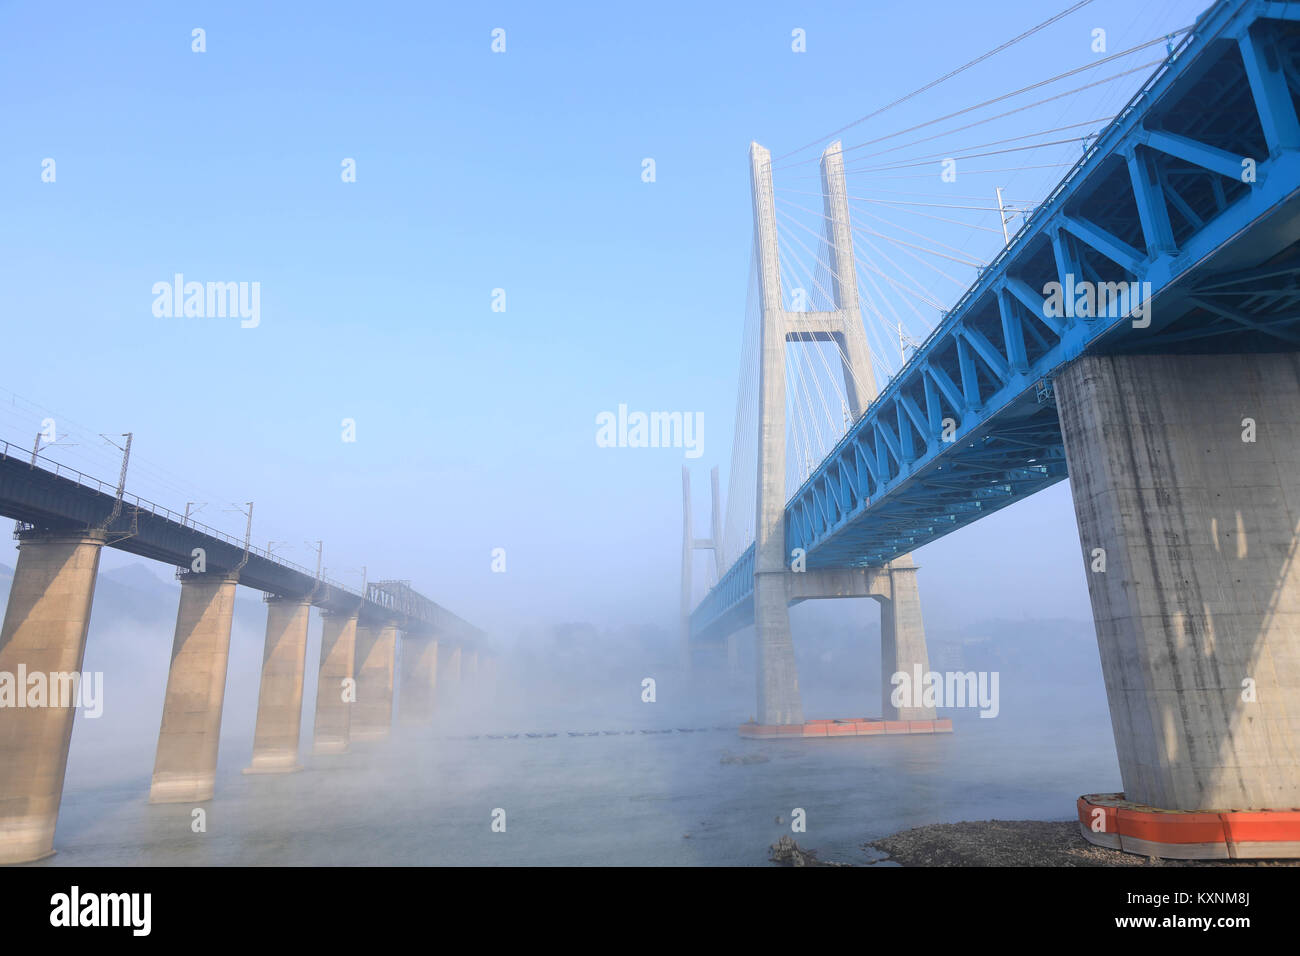 (180111) -- CHONGQING, 11 janvier 2018 (Xinhua) -- Le nouveau pont ferroviaire de la rivière Yangtze Baishatuo (R) est perçu avec l'ancien pont ferroviaire de la rivière Yangtze Baishatuo dans Jiangjin de sud-ouest de la Chine, la municipalité de Chongqing, le 9 janvier 2018. La construction du nouveau double decker à treillis en acier socle pont de chemin de fer a été terminé récemment. Il dispose de 4 pistes sur le pont supérieur pour les trains avec une vitesse de 200 mètres conçu par heure et 2 pistes sur le pont inférieur pour les trains de fret avec la vitesse conçue de 120 kilomètres par heure. La longueur totale du pont est de 5,32 kilomètres, dont Banque D'Images